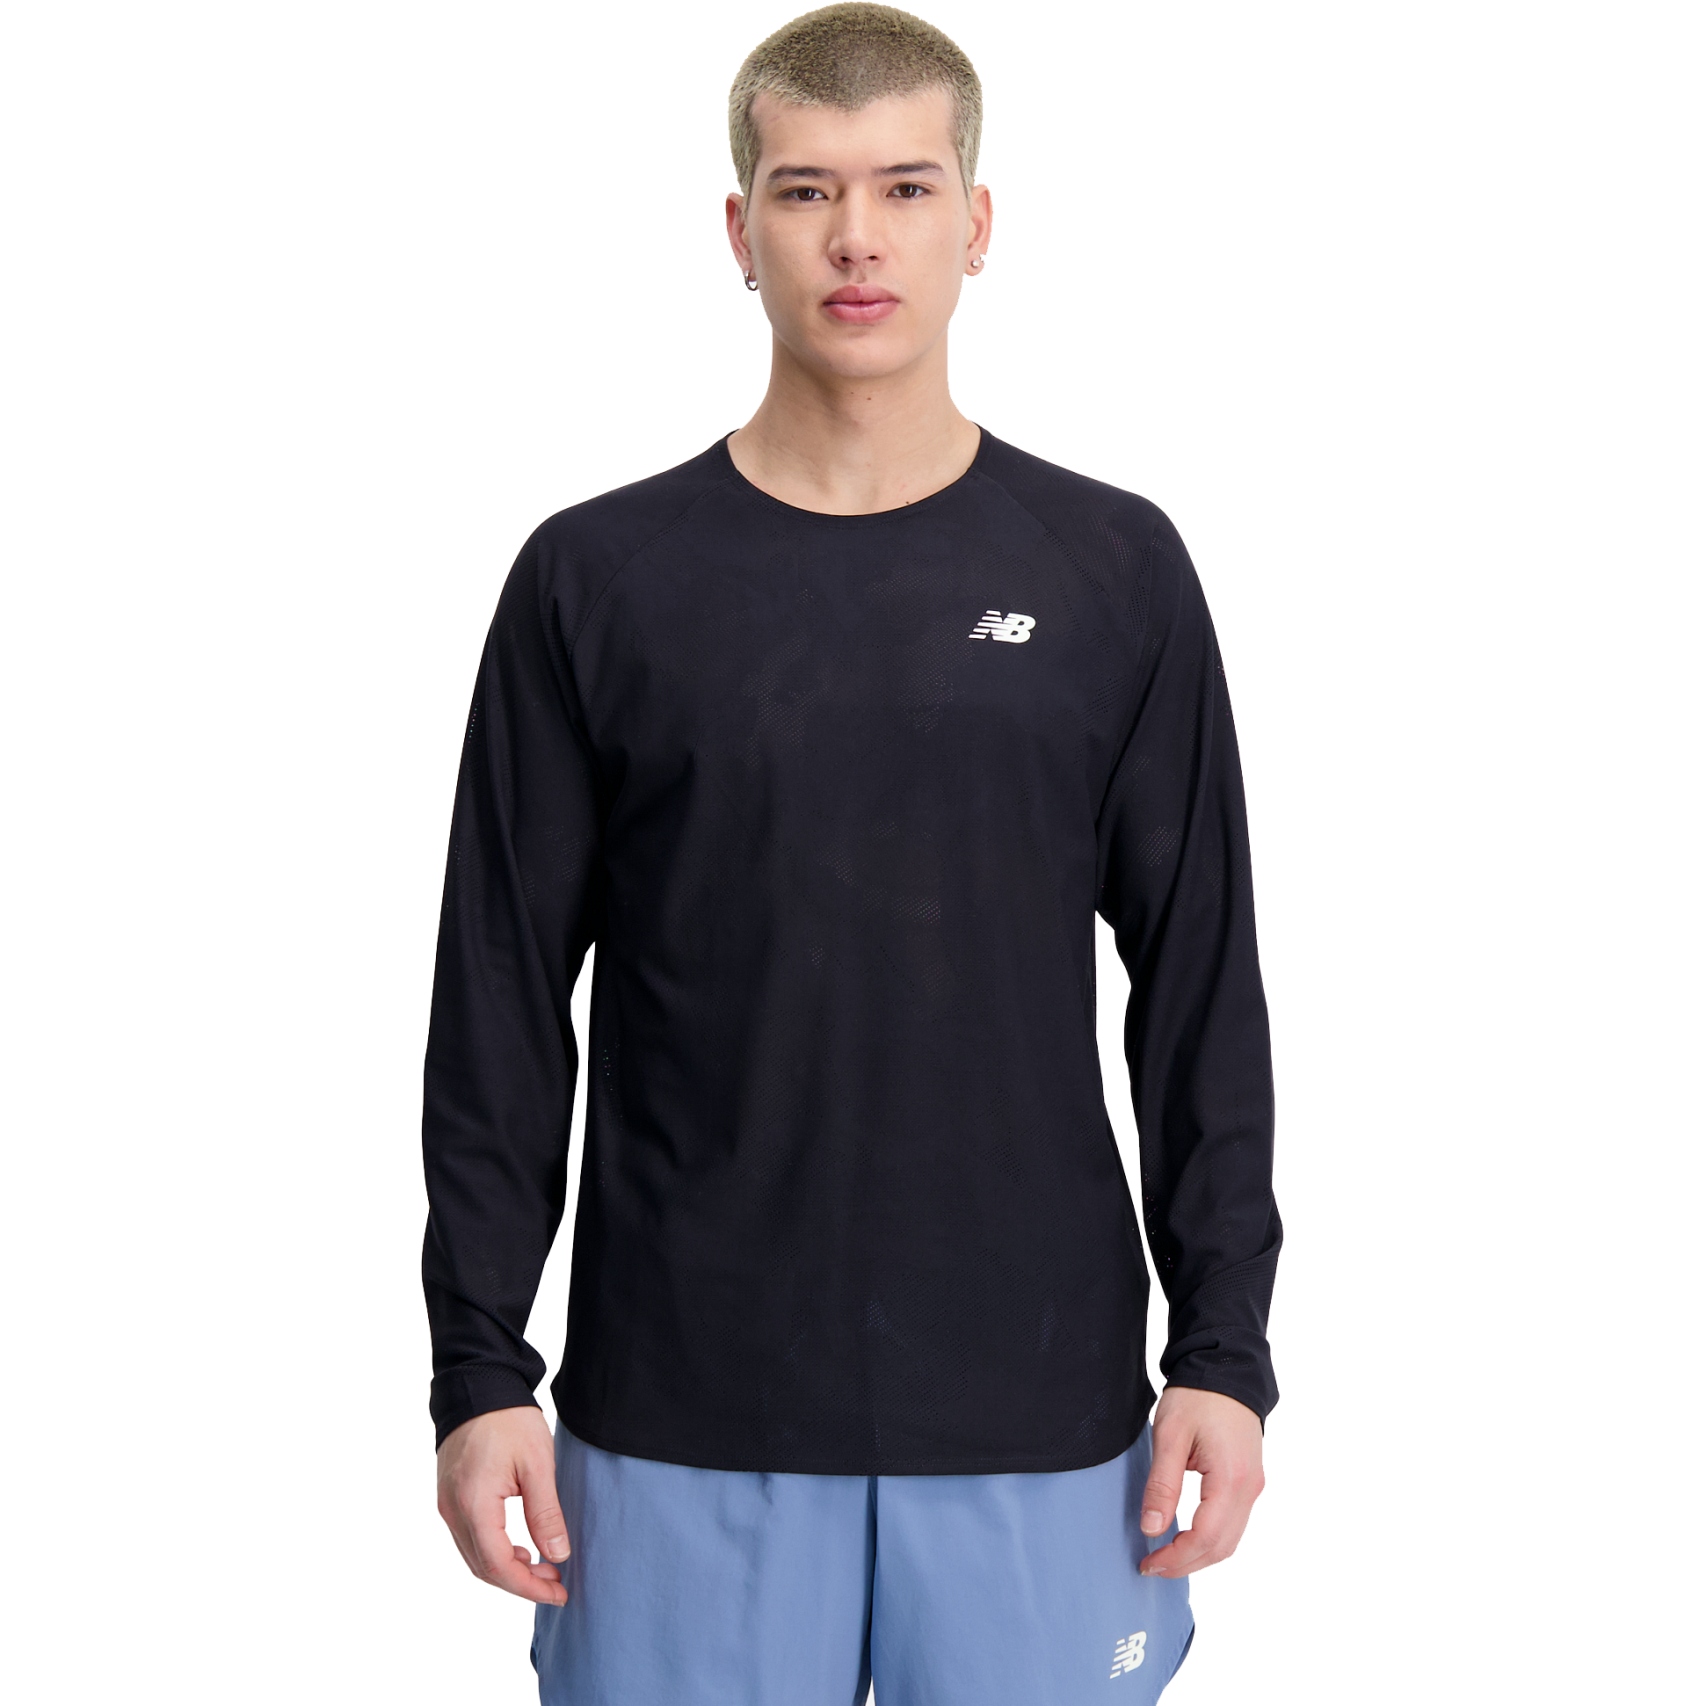 Productfoto van New Balance Q Speed Jacquard Shirt met Lange Mouwen - zwart